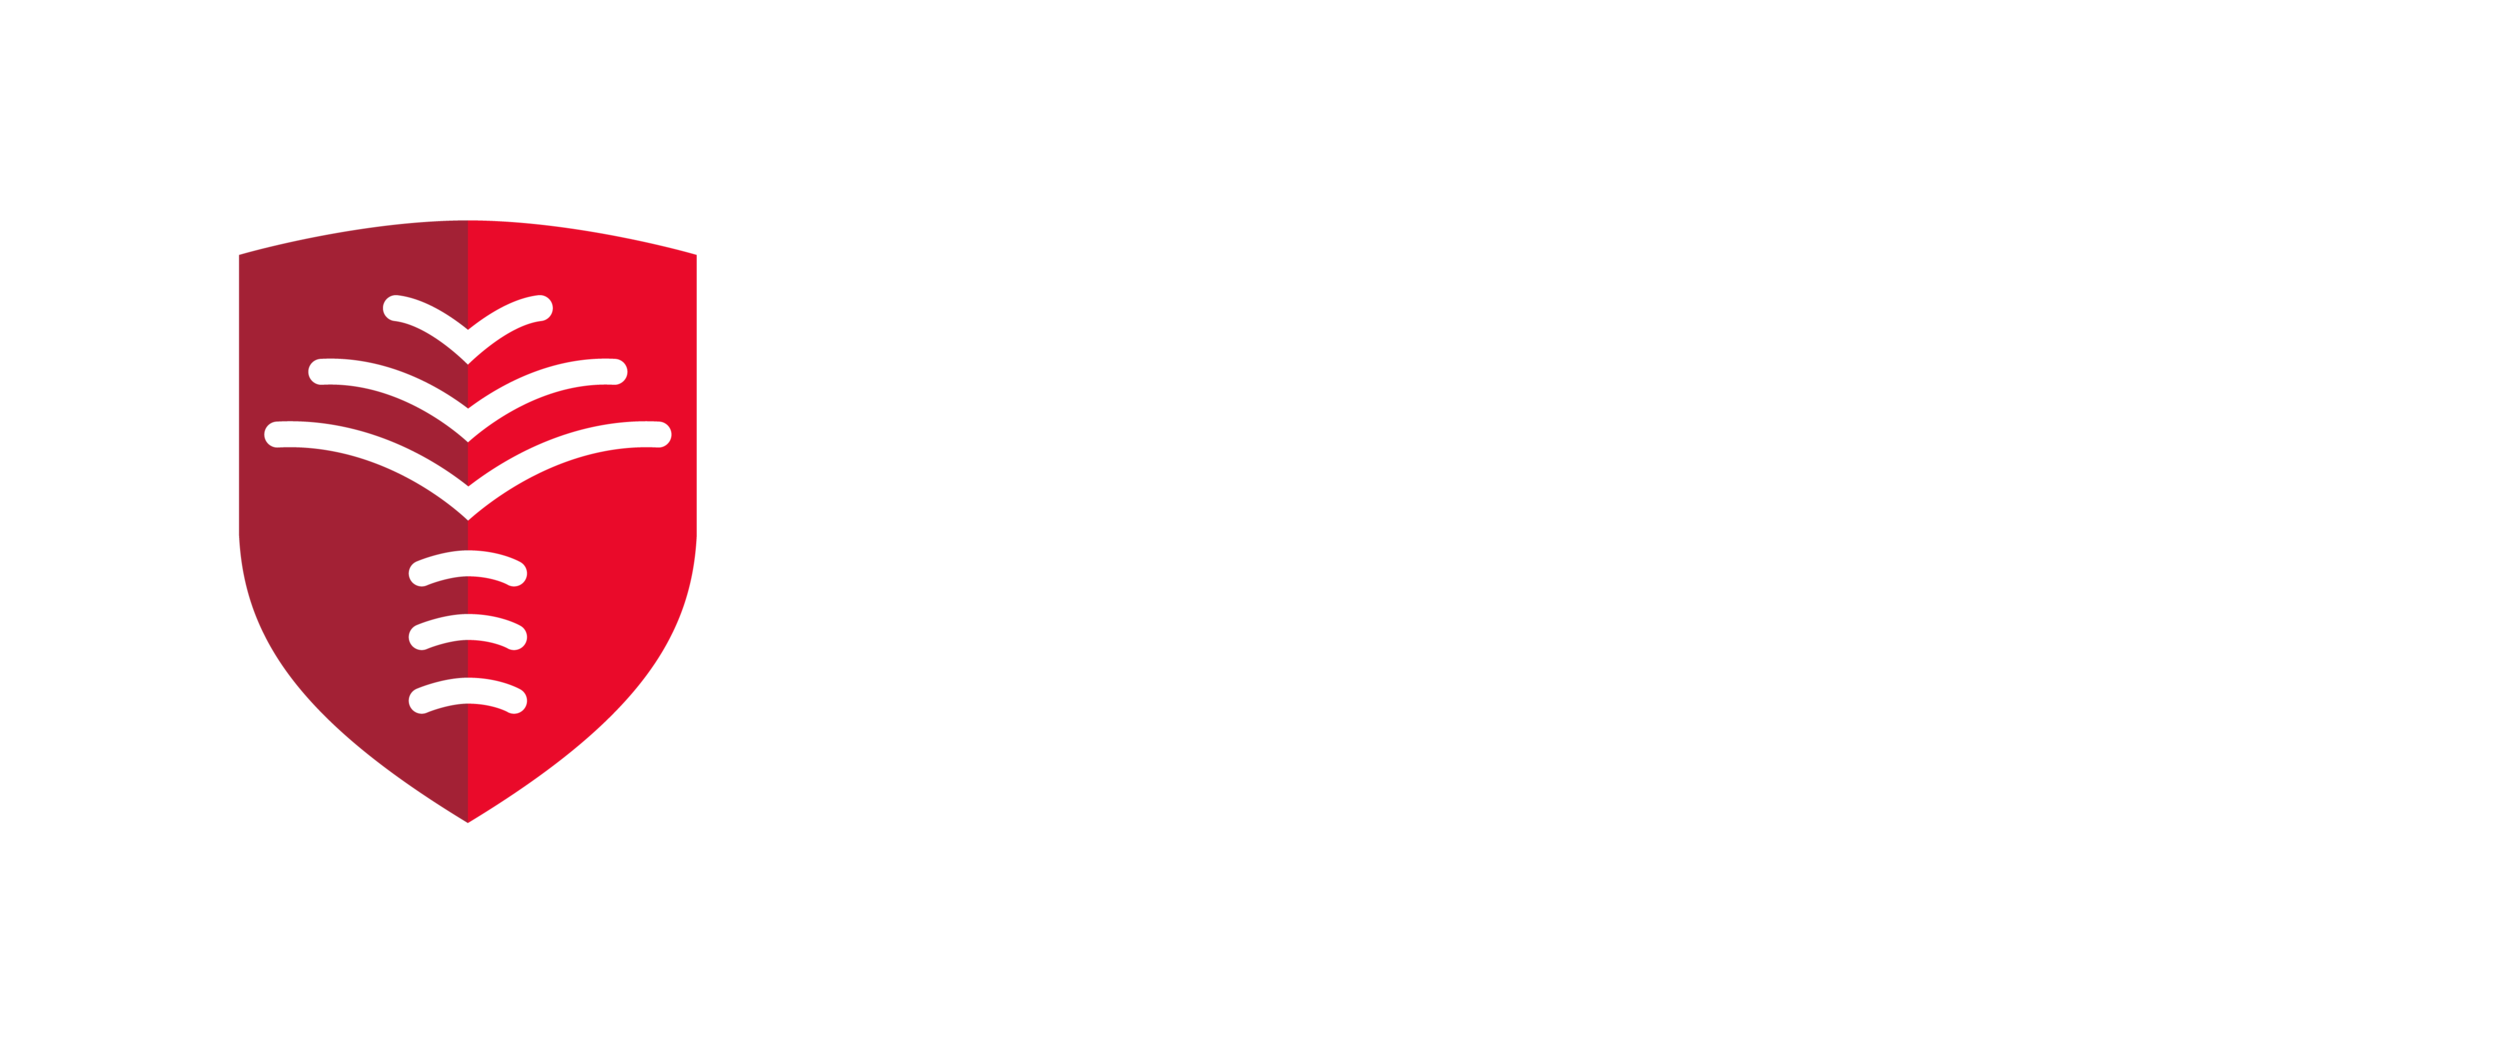 Palms School